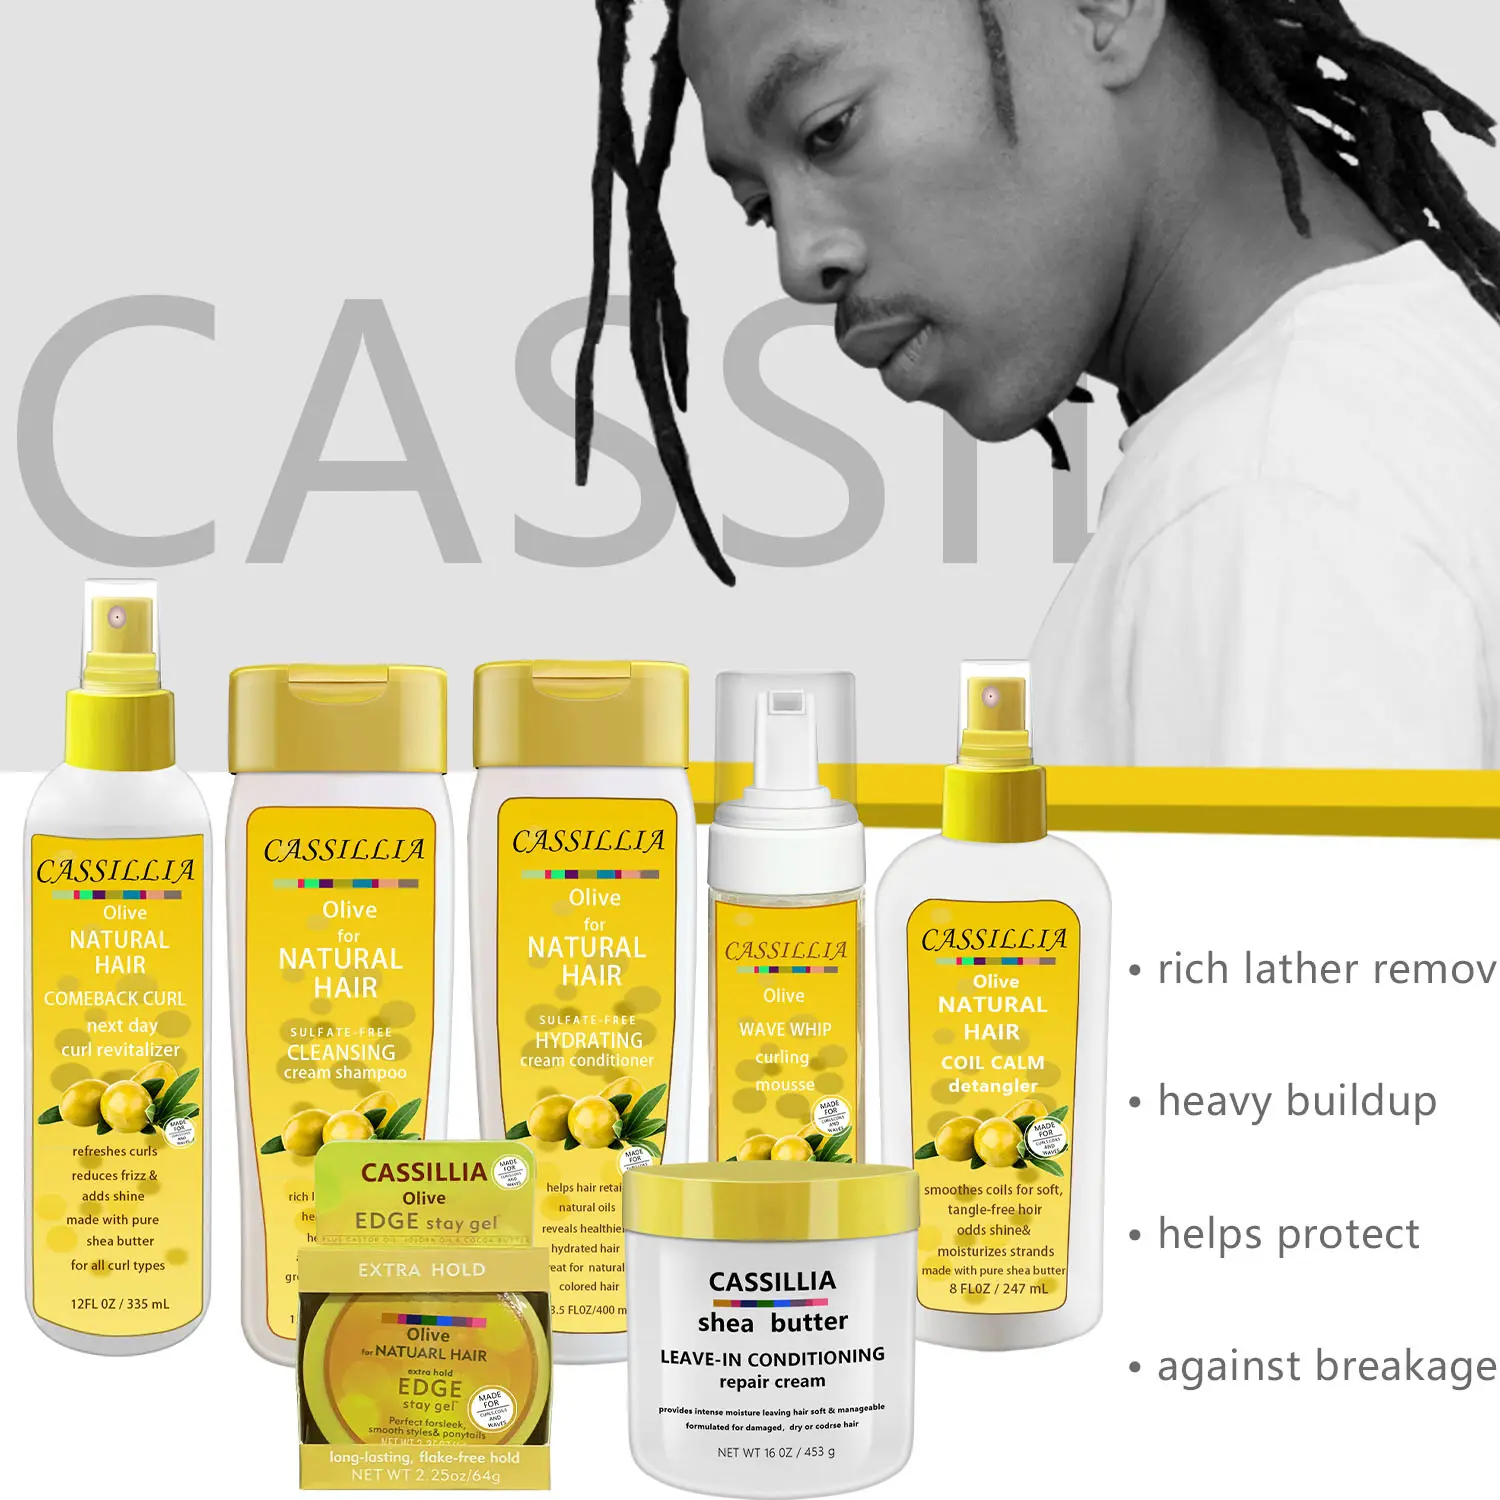 CASSILLIA oem odm-producto para el cuidado del cabello, producto para el cabello rizado, hidratante, natural, gran oferta, nuevo